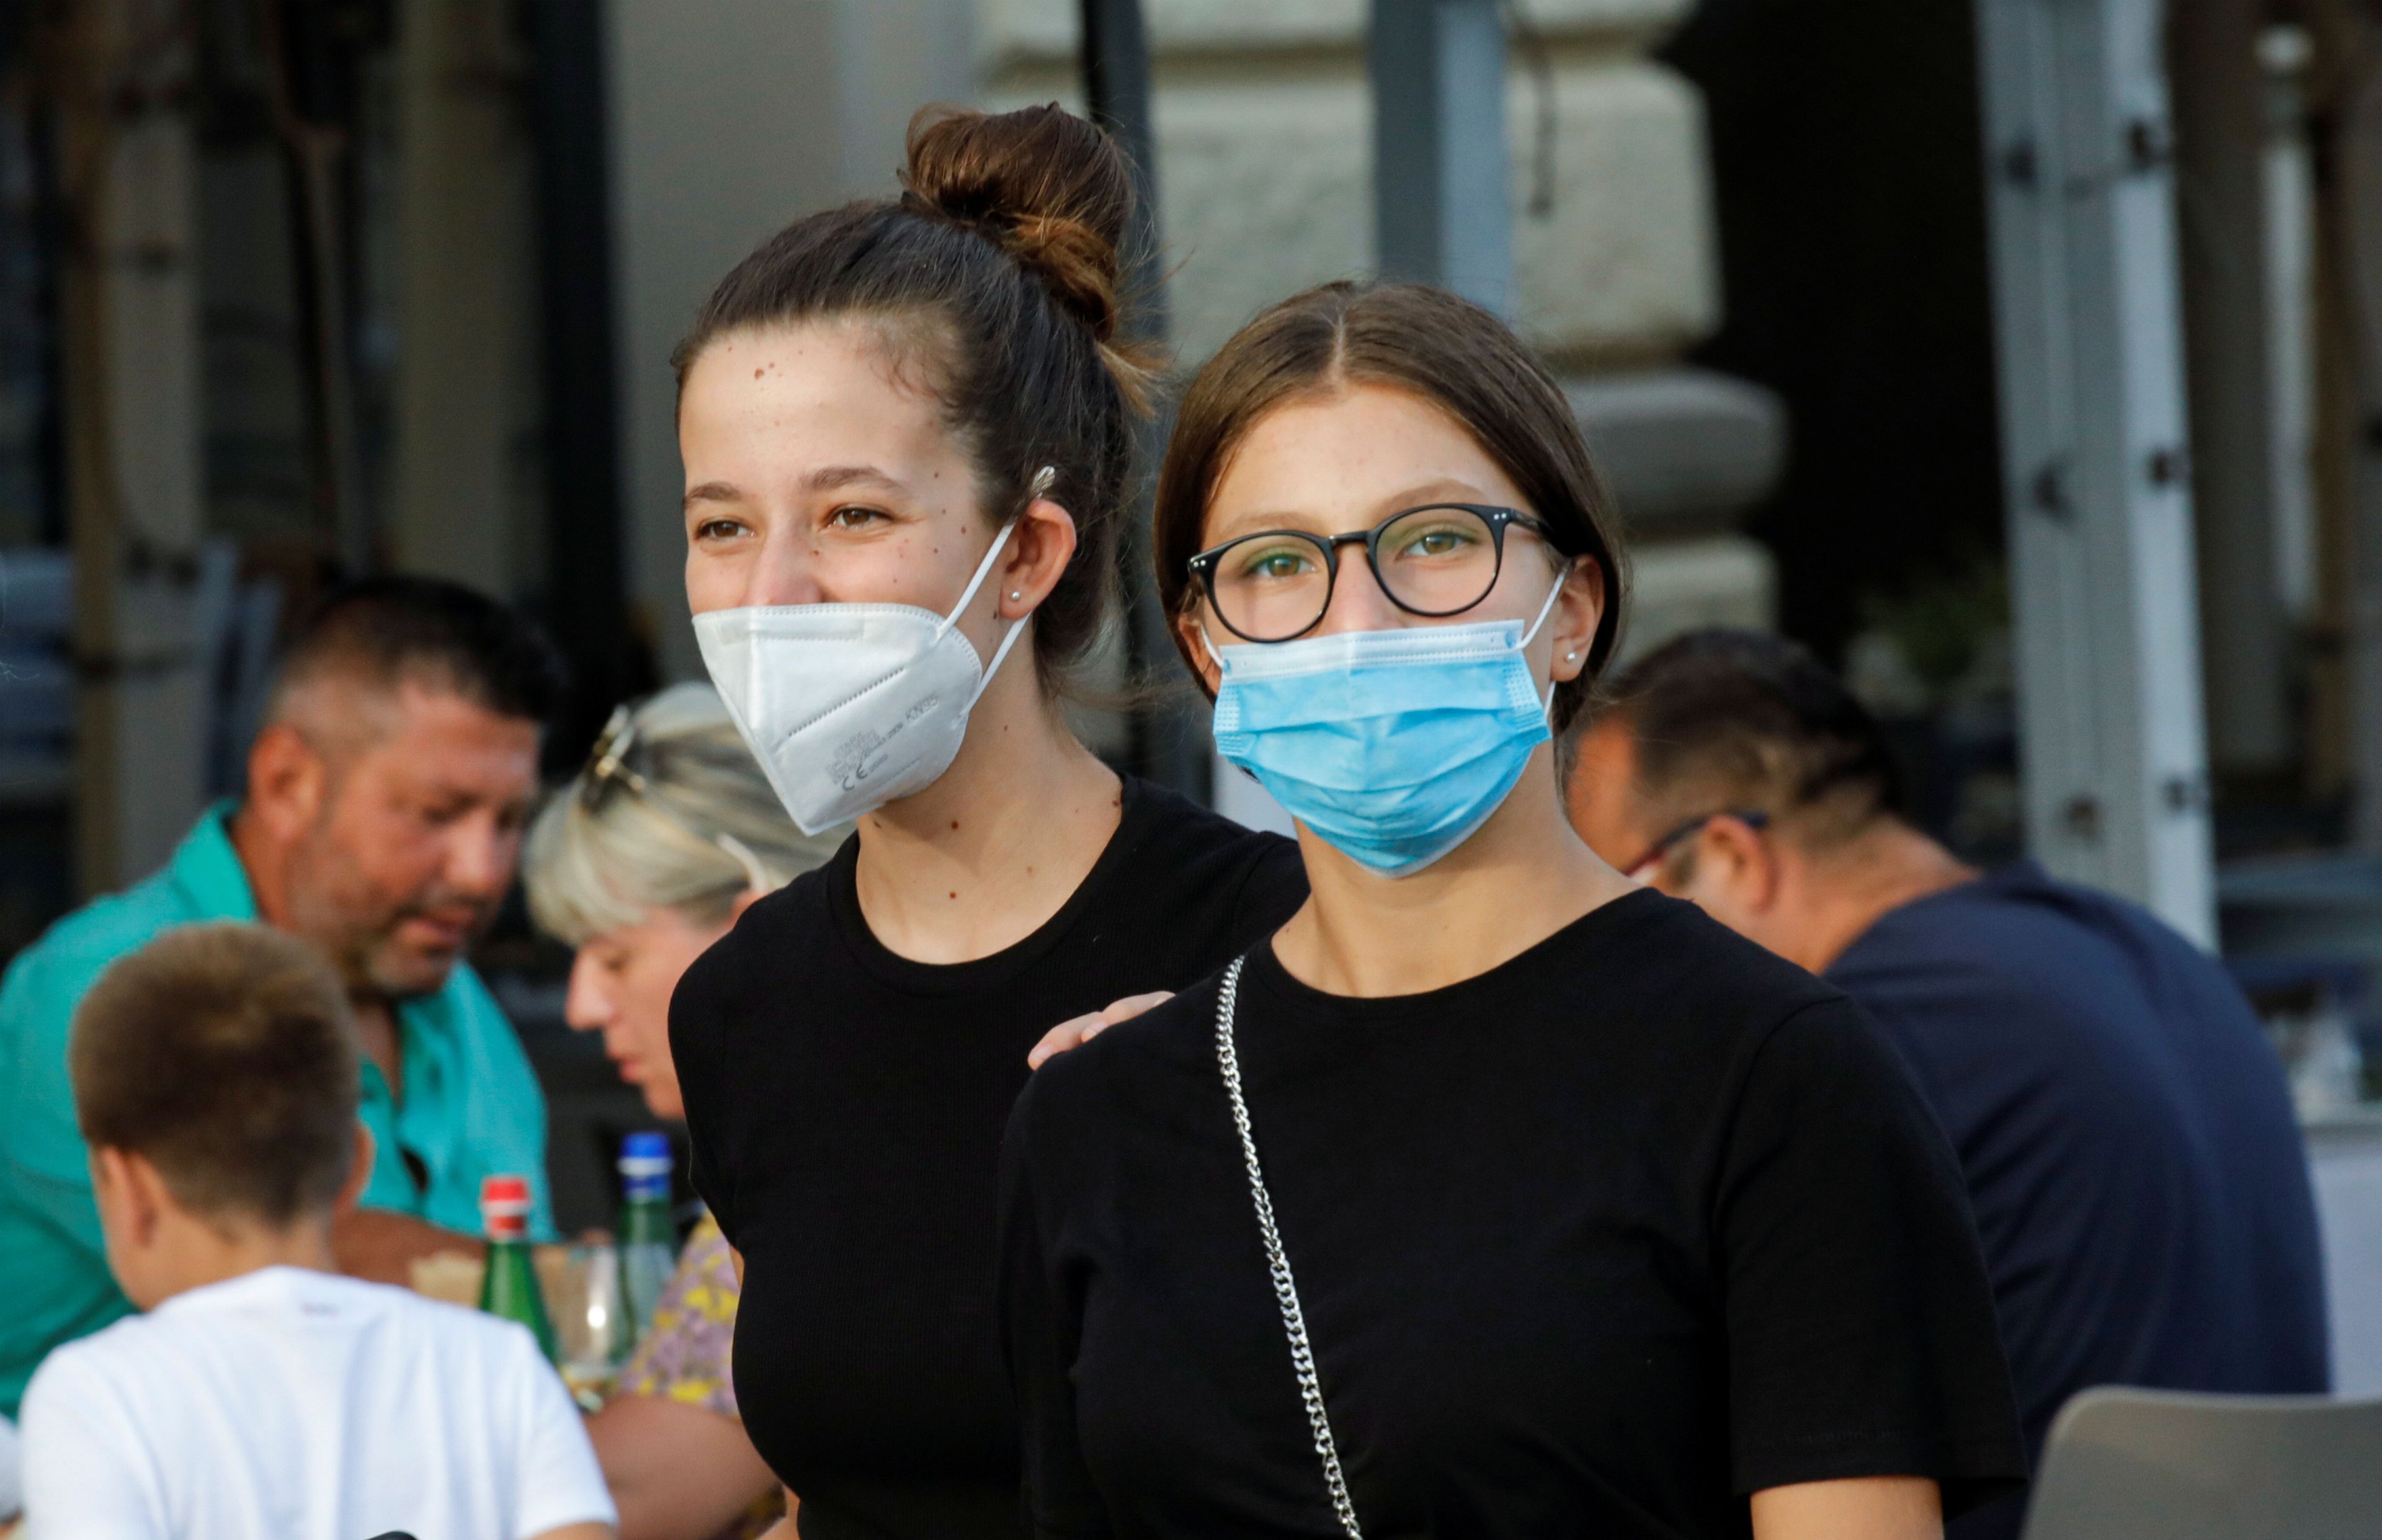 Chicas jóvenes con mascarilla contra el coronavirus